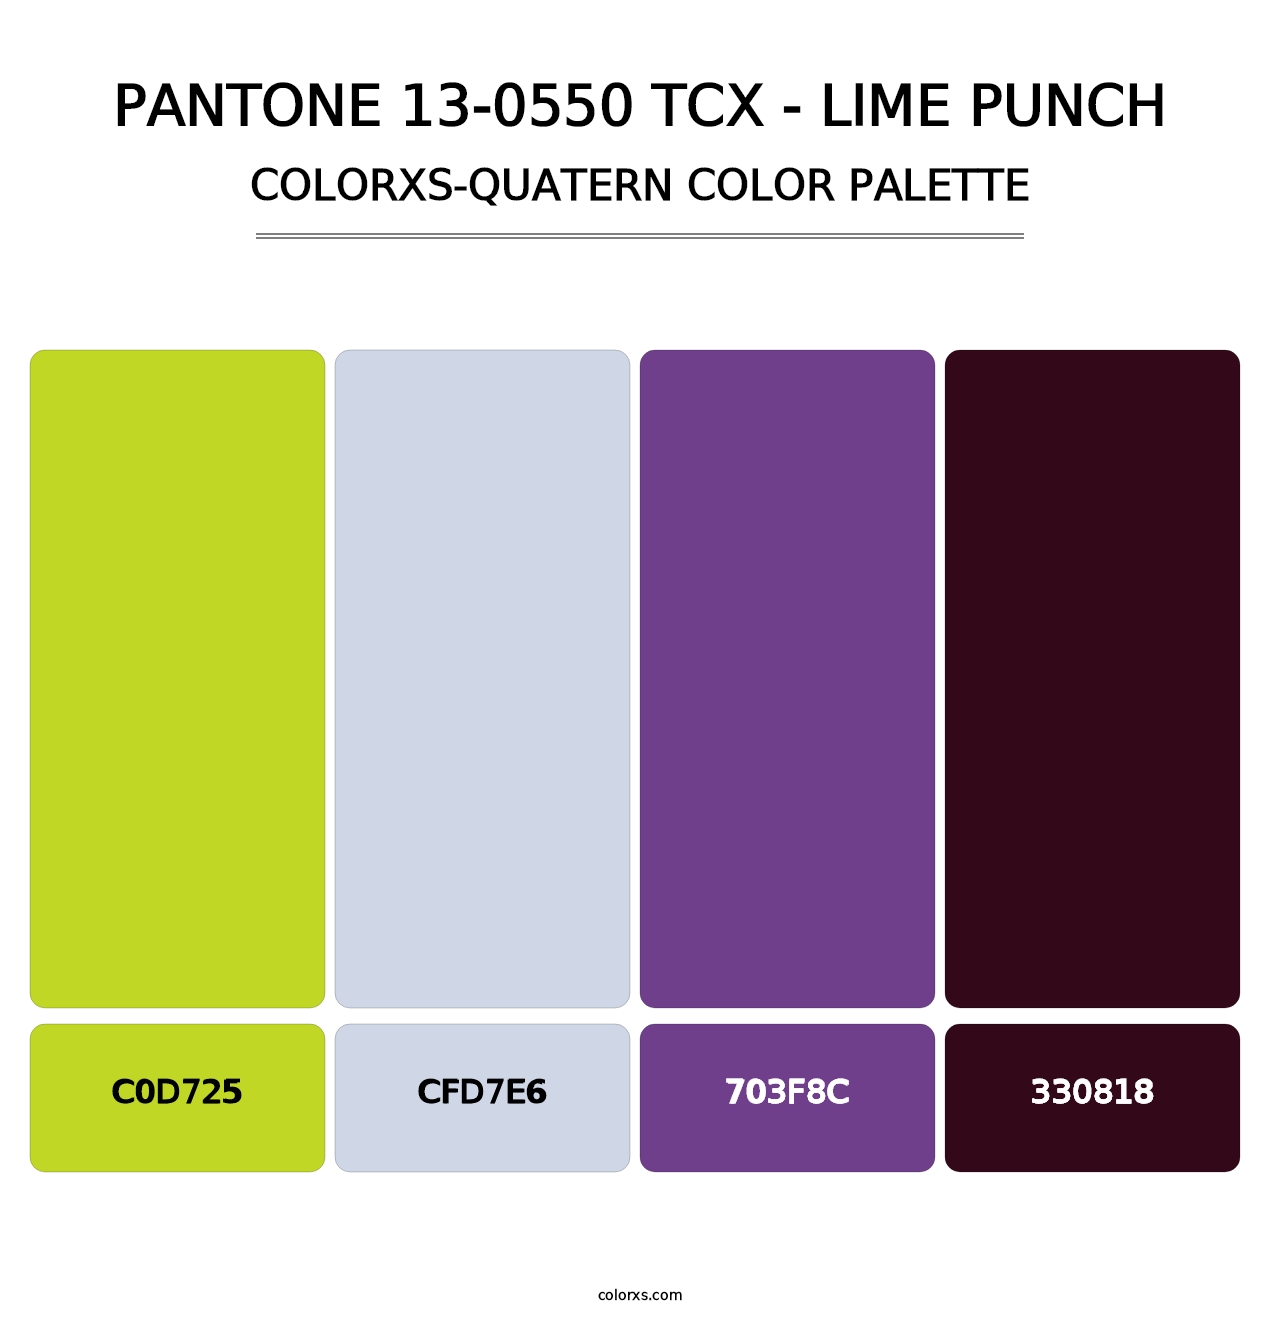 PANTONE 13-0550 TCX - Lime Punch - Colorxs Quatern Palette